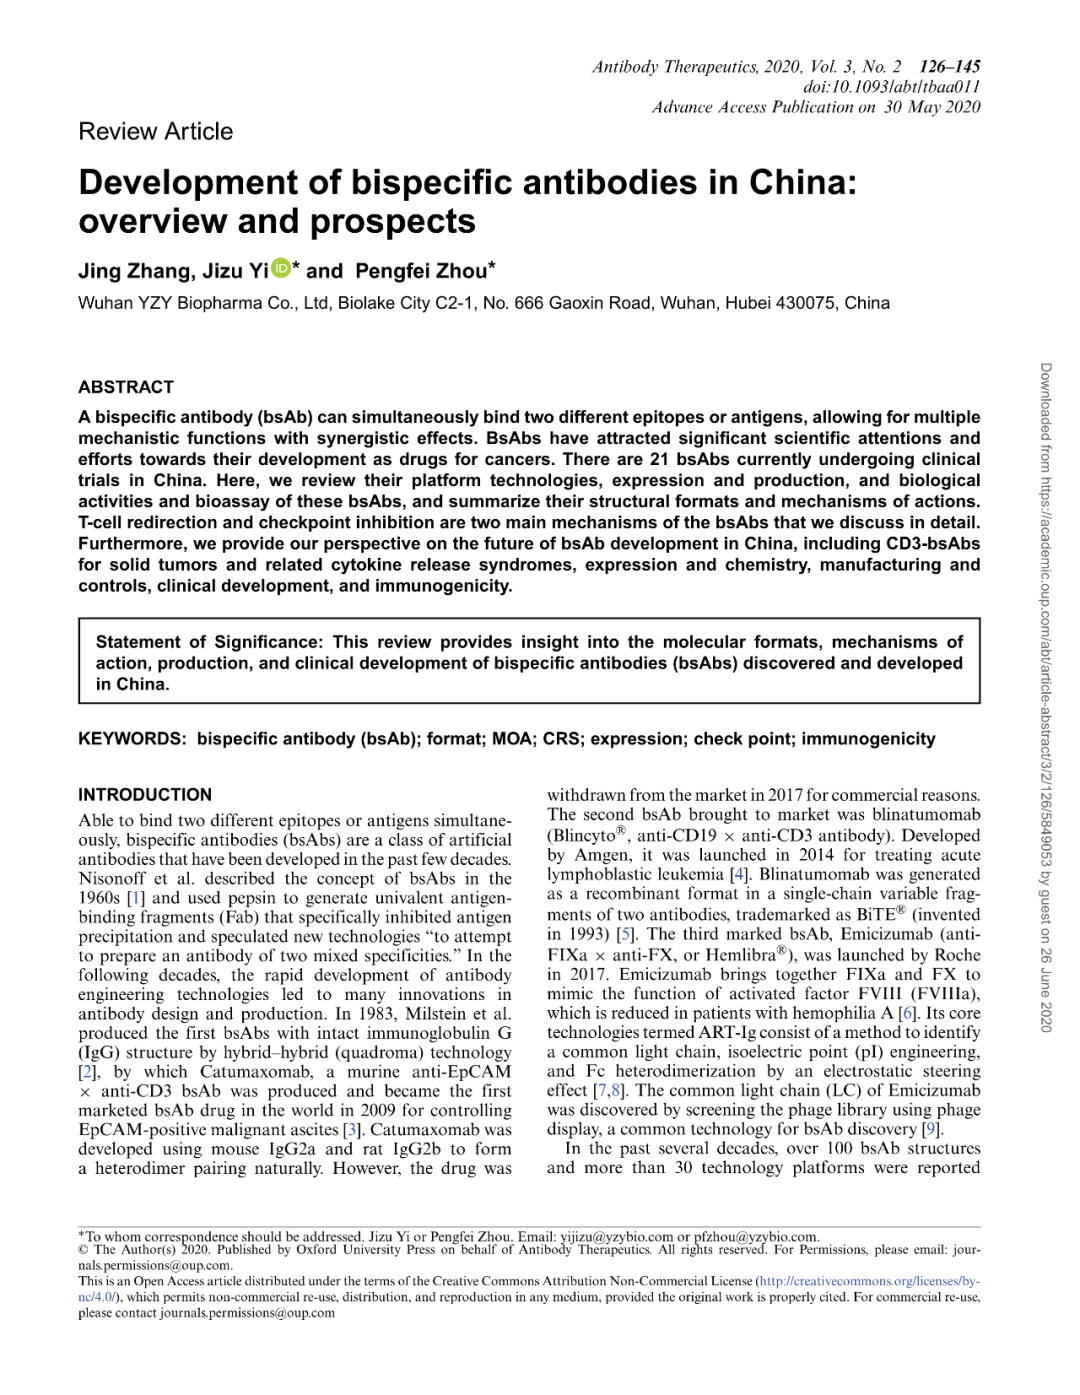 中国双<font color="red">特异性</font>抗体的开发：概况与展望